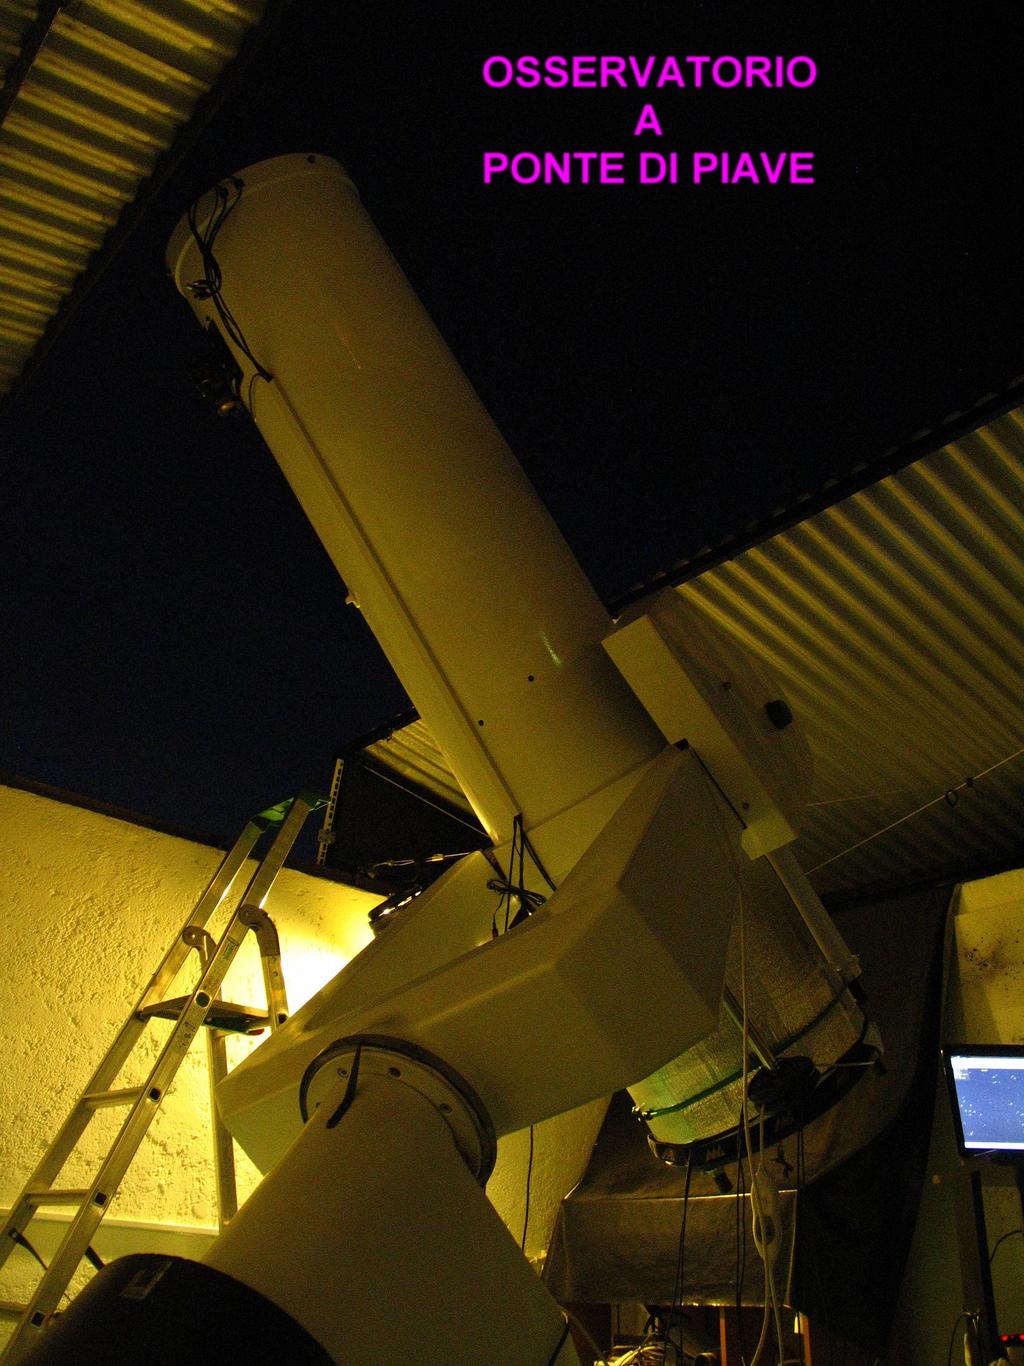 Strumentazione Attuale a Ponte di Piave Questo l'attuale telescopio montato su una terrazza nel giardino di casa, a Ponte di Piave, località